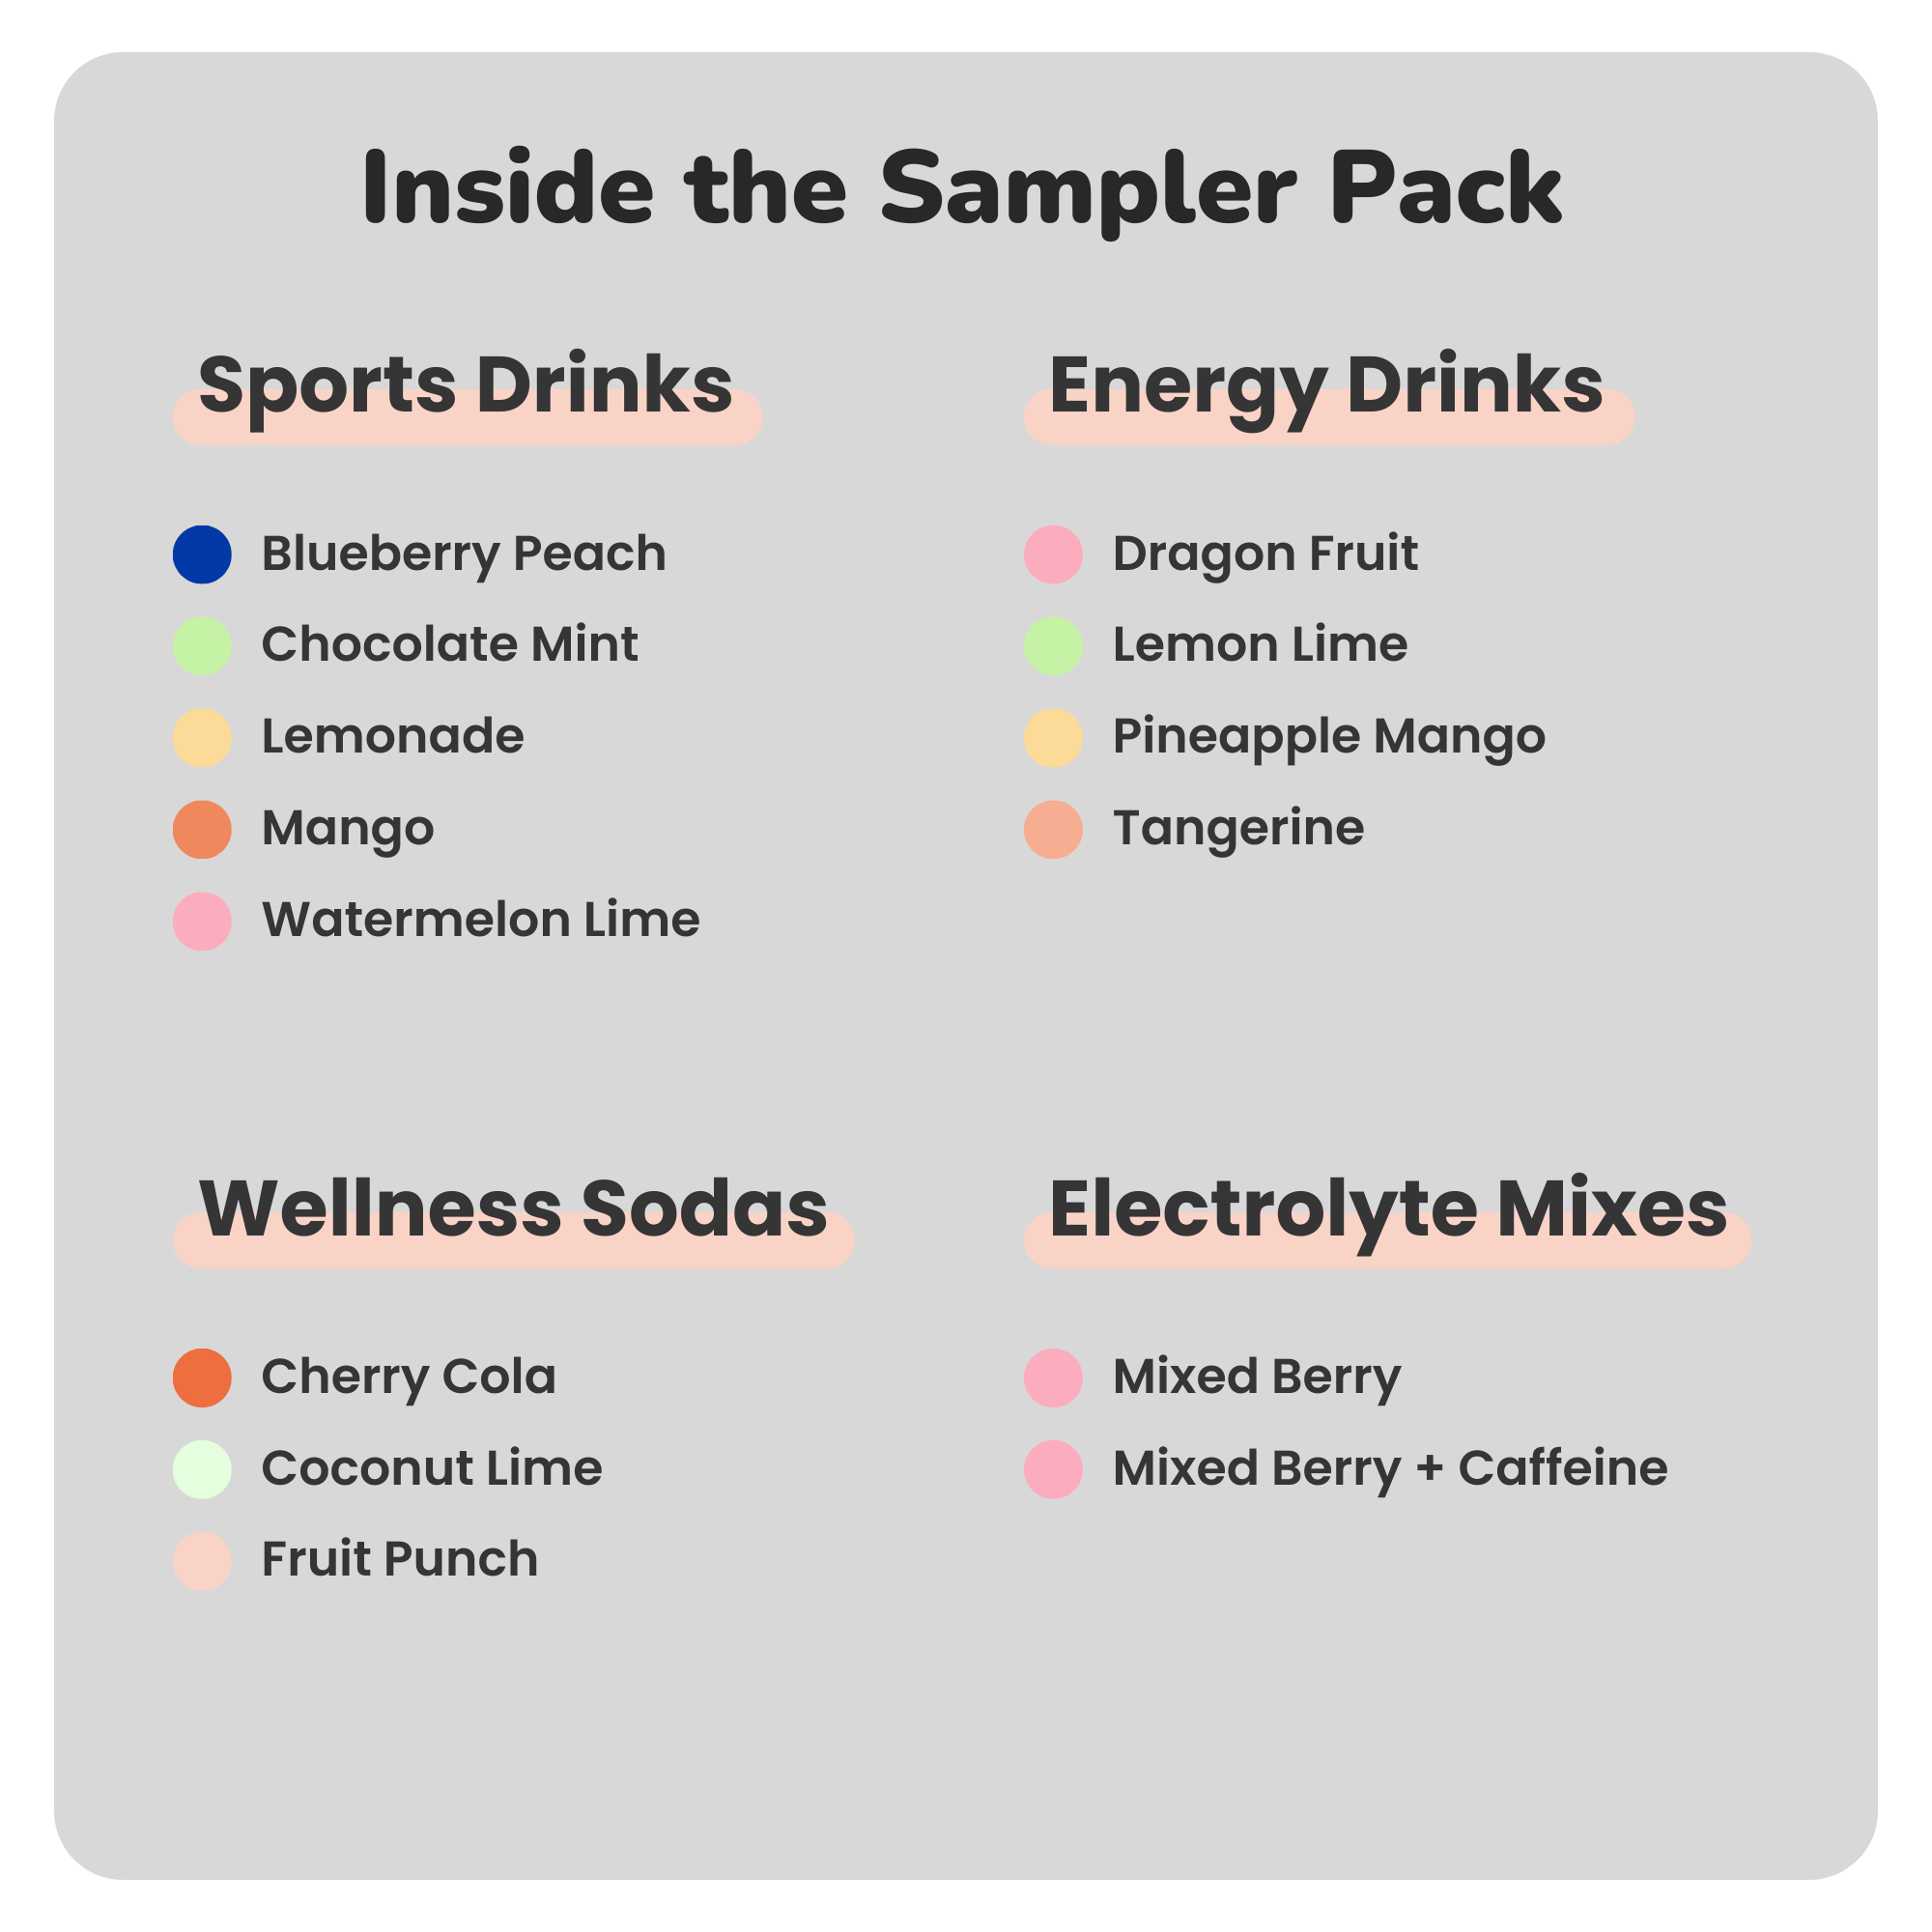 Hydration Sport Drink Mix - 4 Pack Sampler